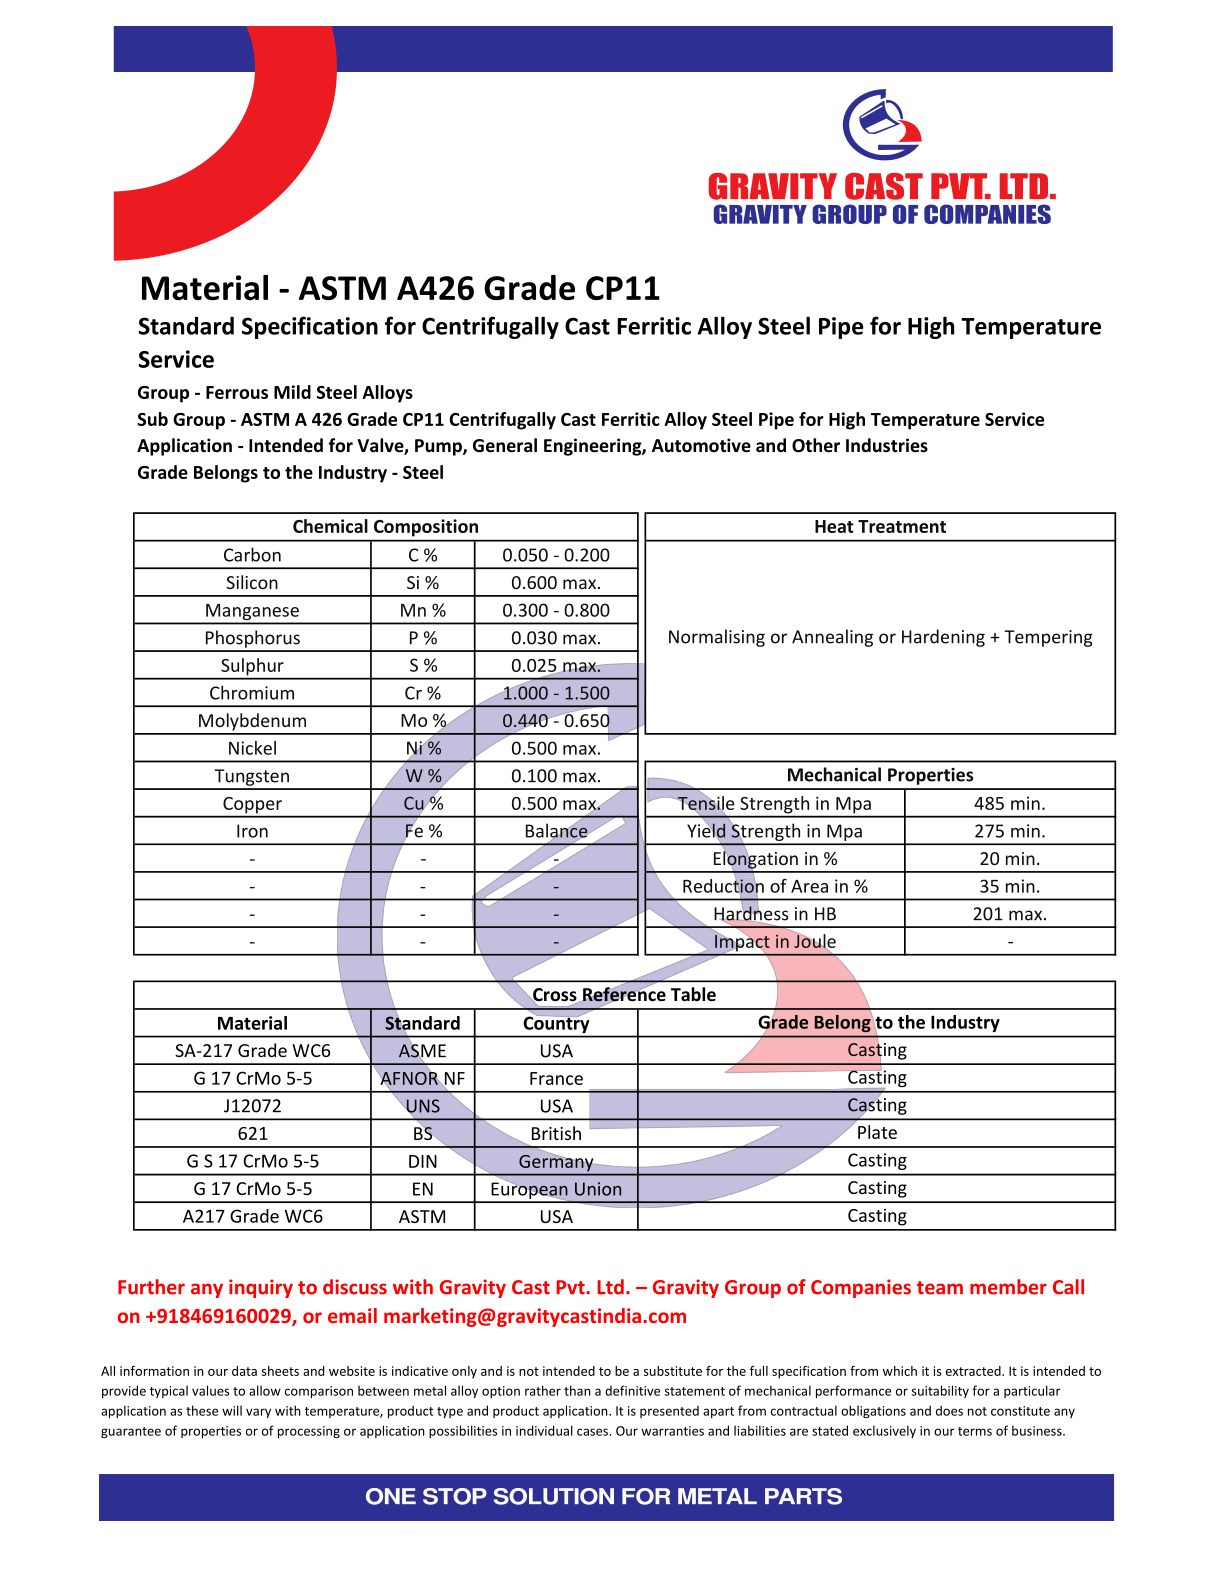 ASTM A426 Grade CP11.pdf